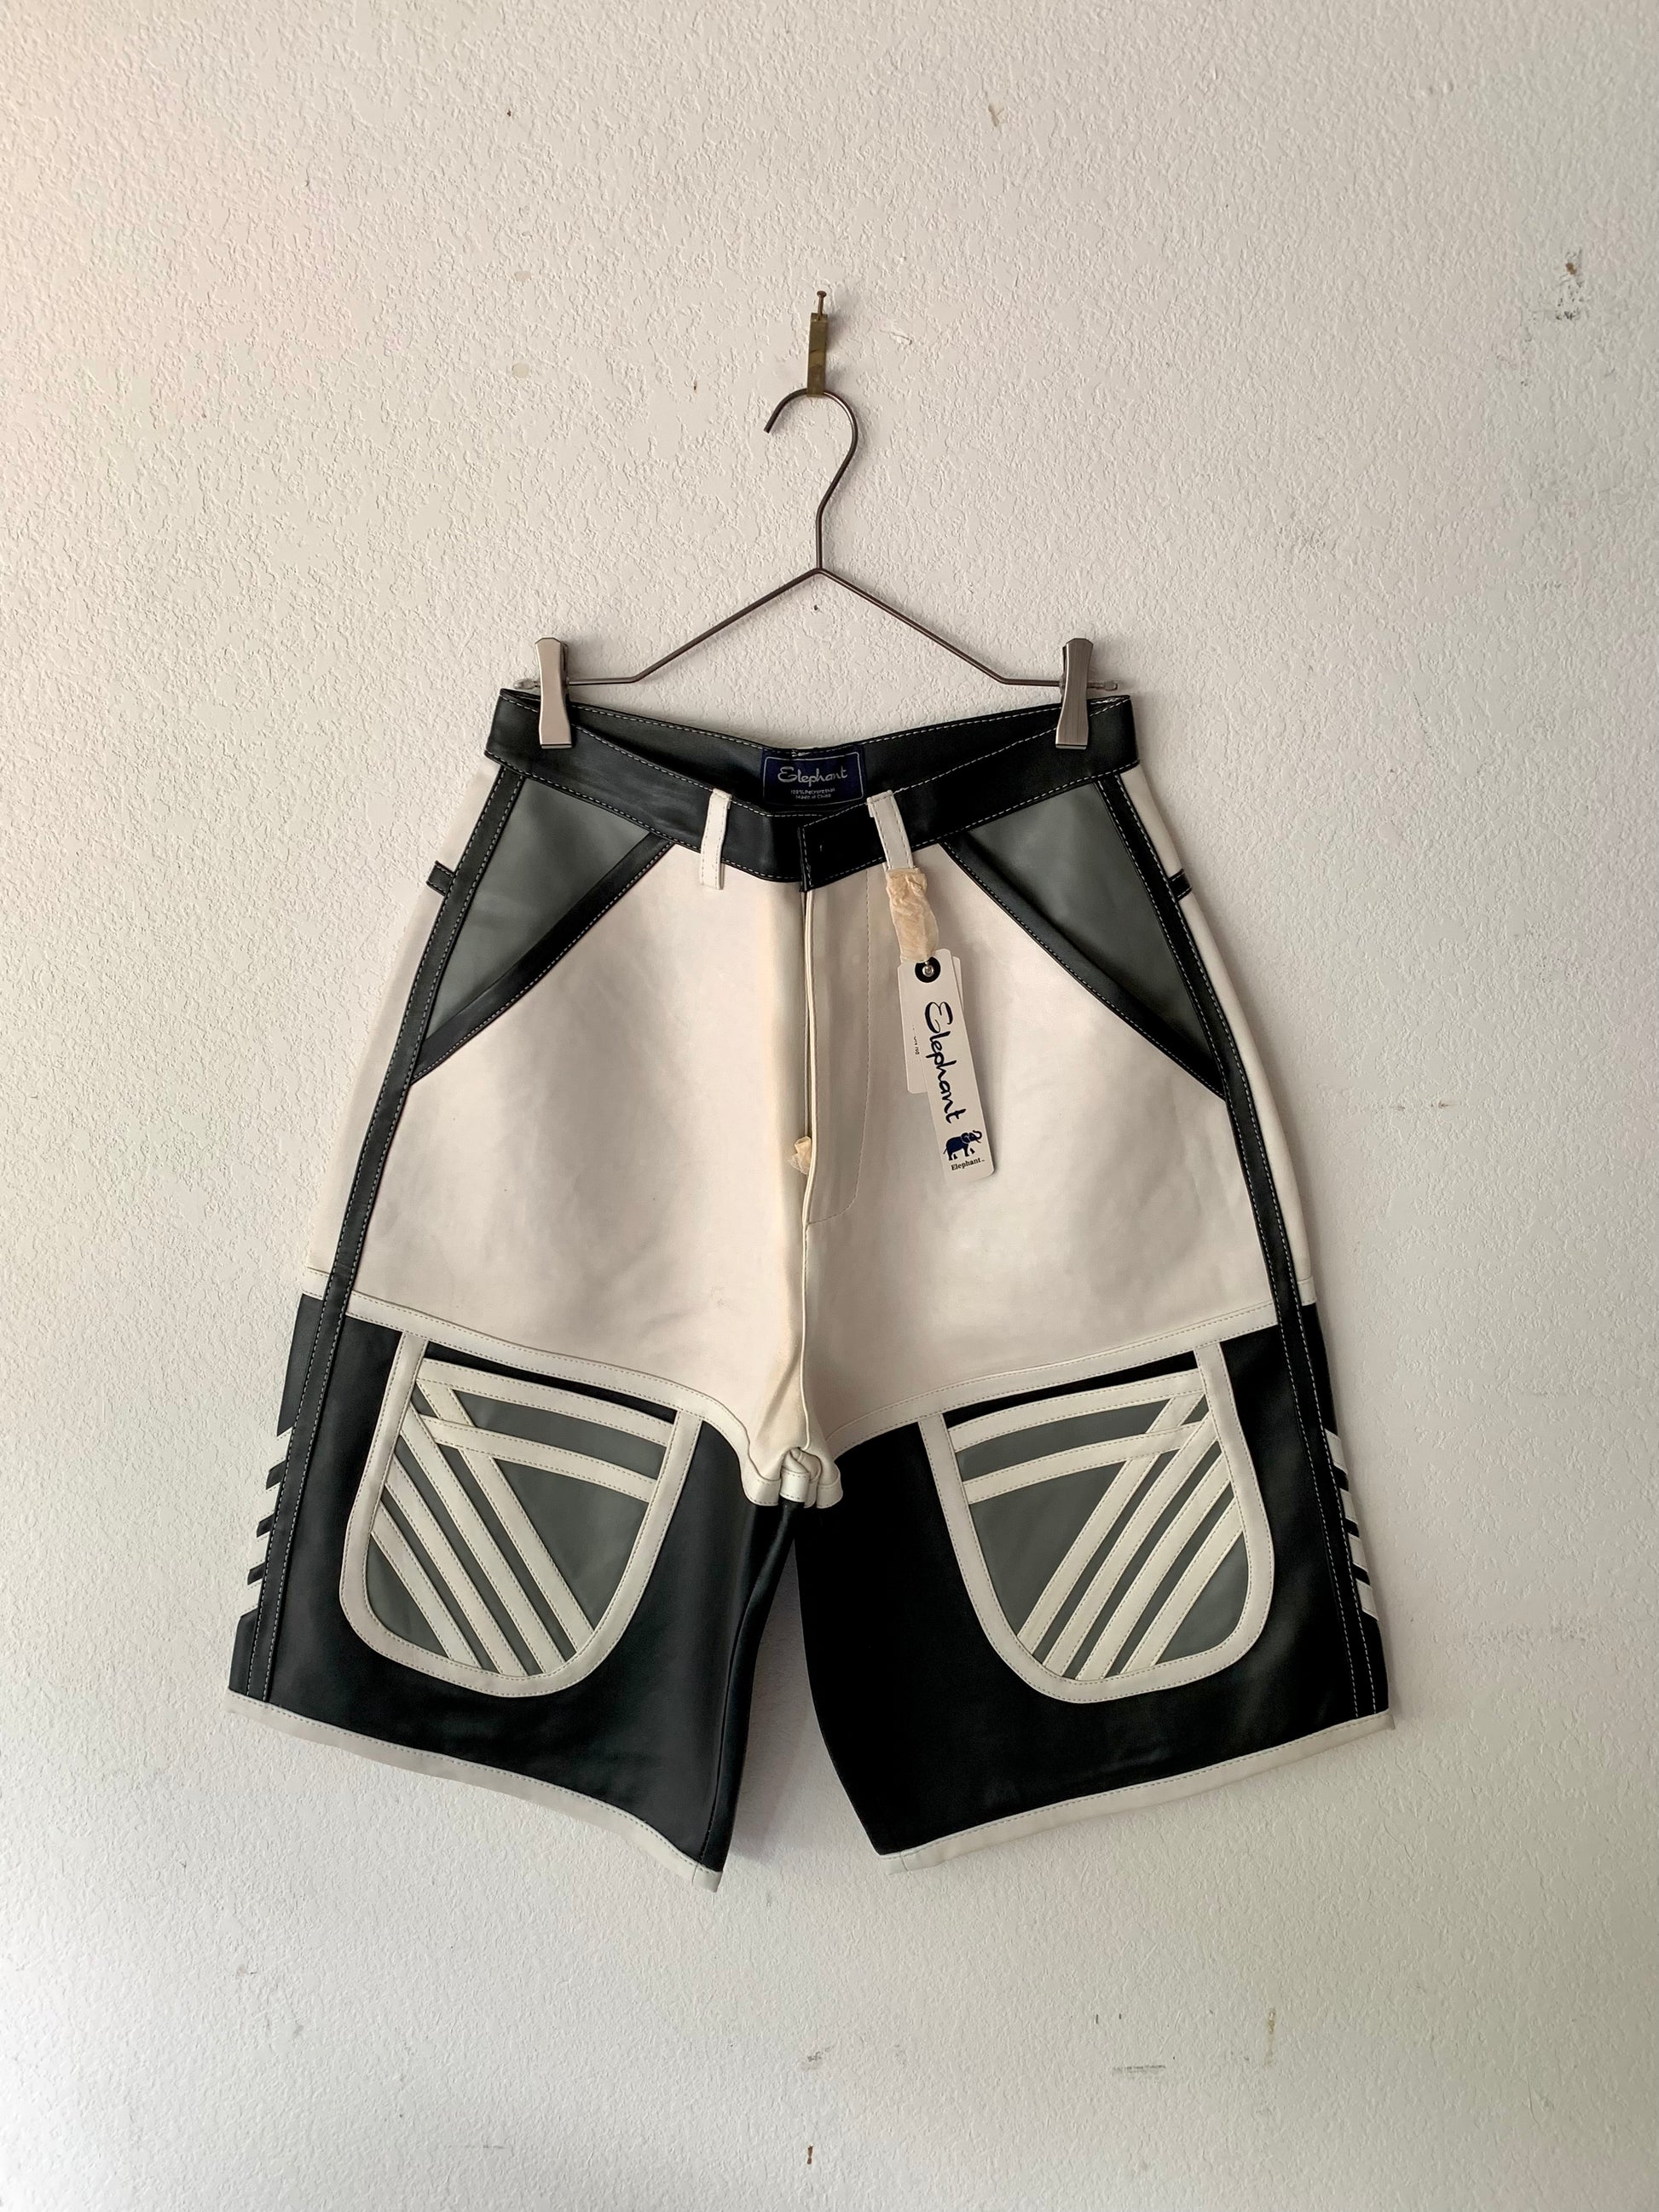 00's Black and White Elephant Leather Shorts